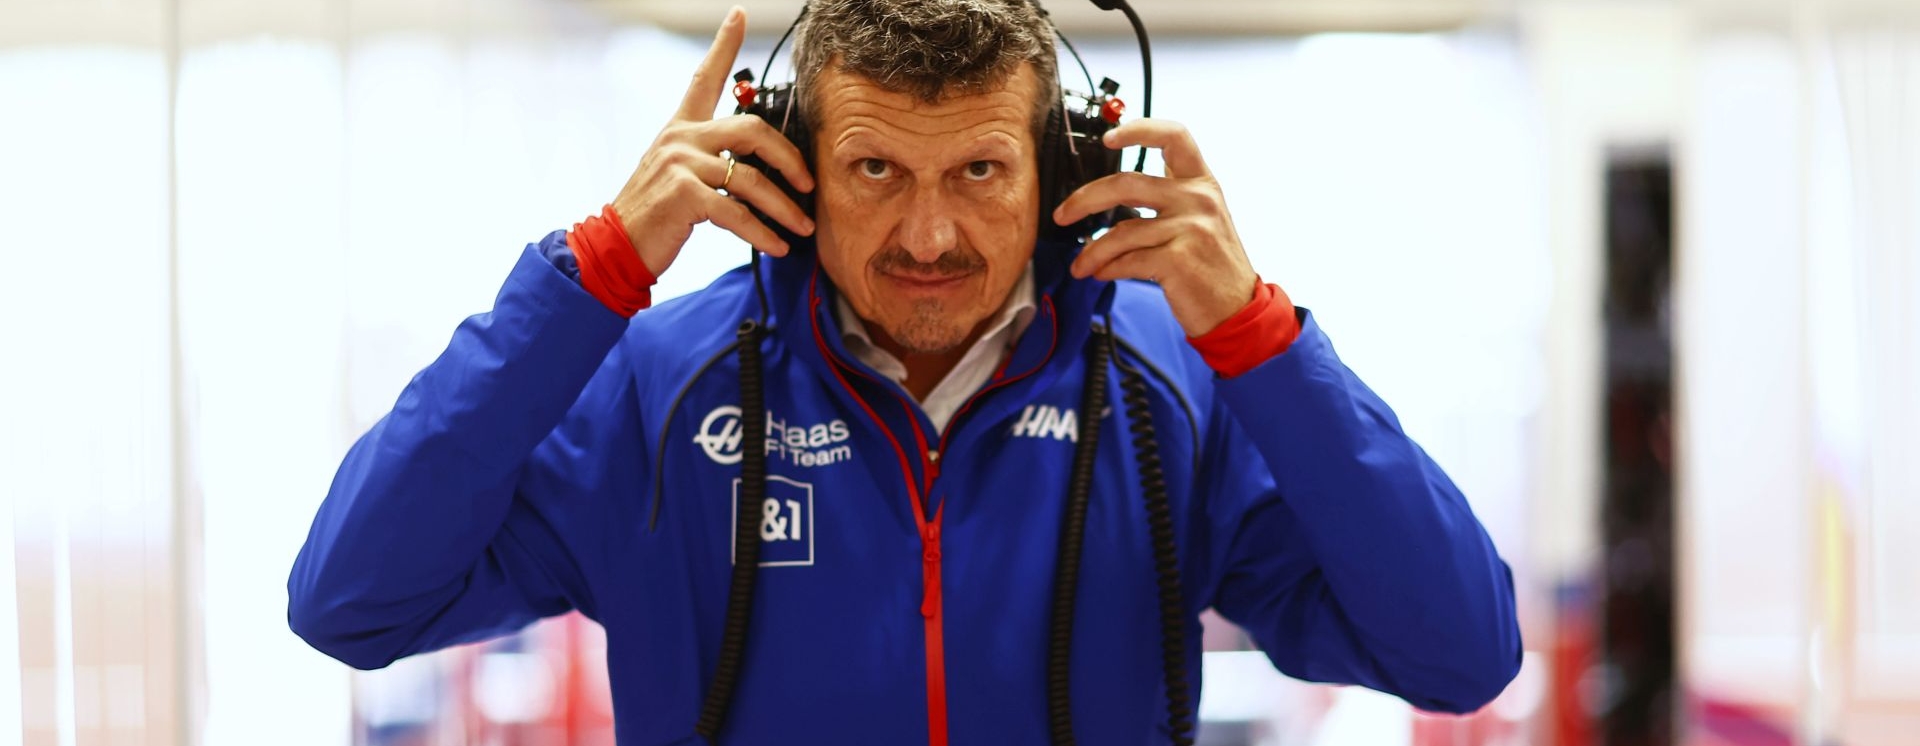 Γκίνθερ Στάινερ στο Gazzetta: «Δεν είμαι σταρ της τηλεόρασης, είμαι ο διευθυντής μίας ομάδας F1»